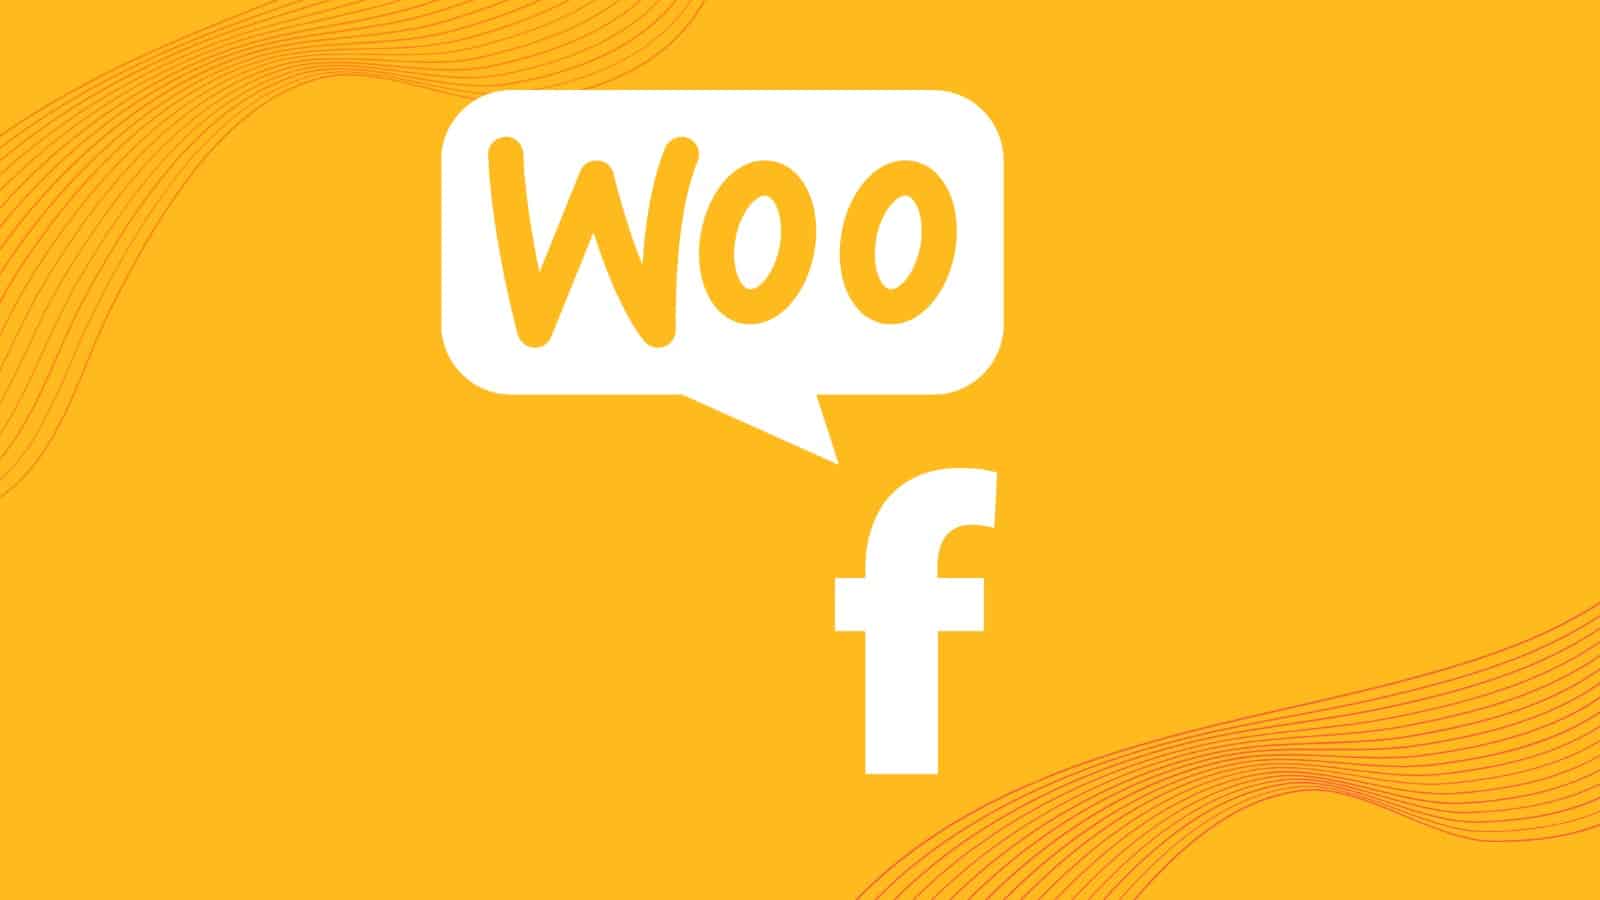 WooCommerce y Facebook hablan en DeMomentSomTres